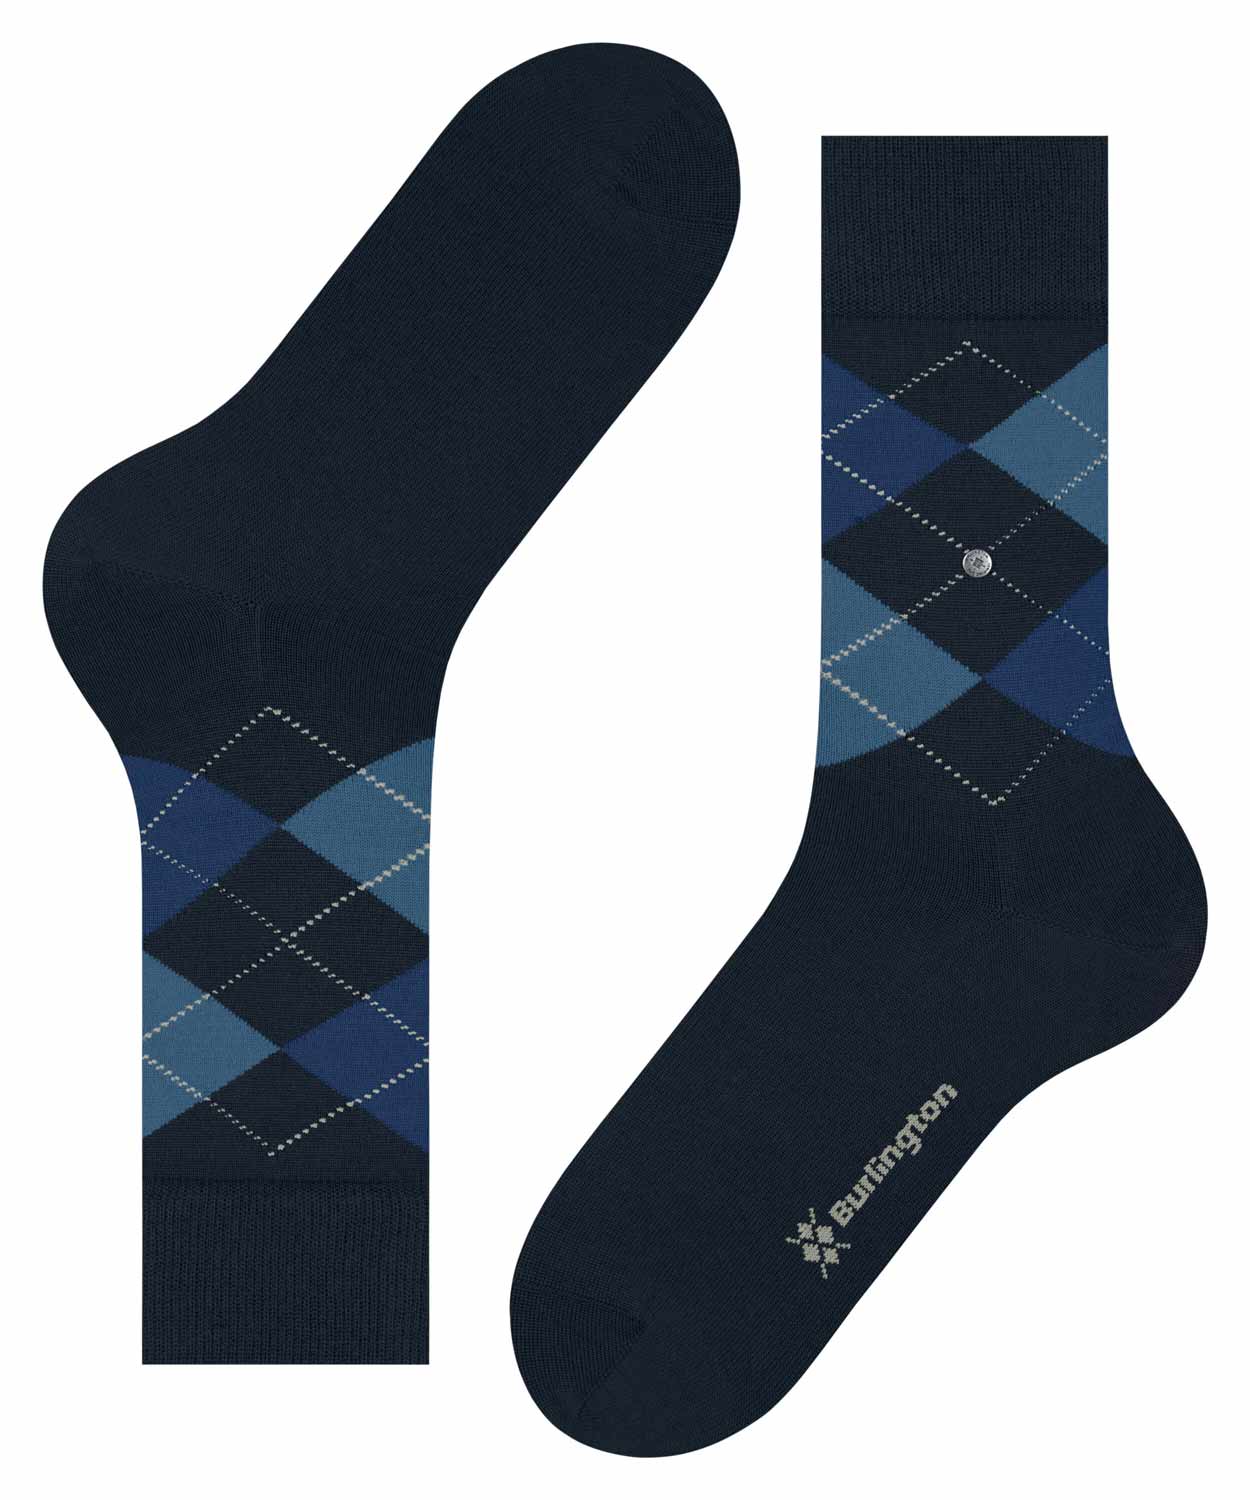 Socks - Edinburgh